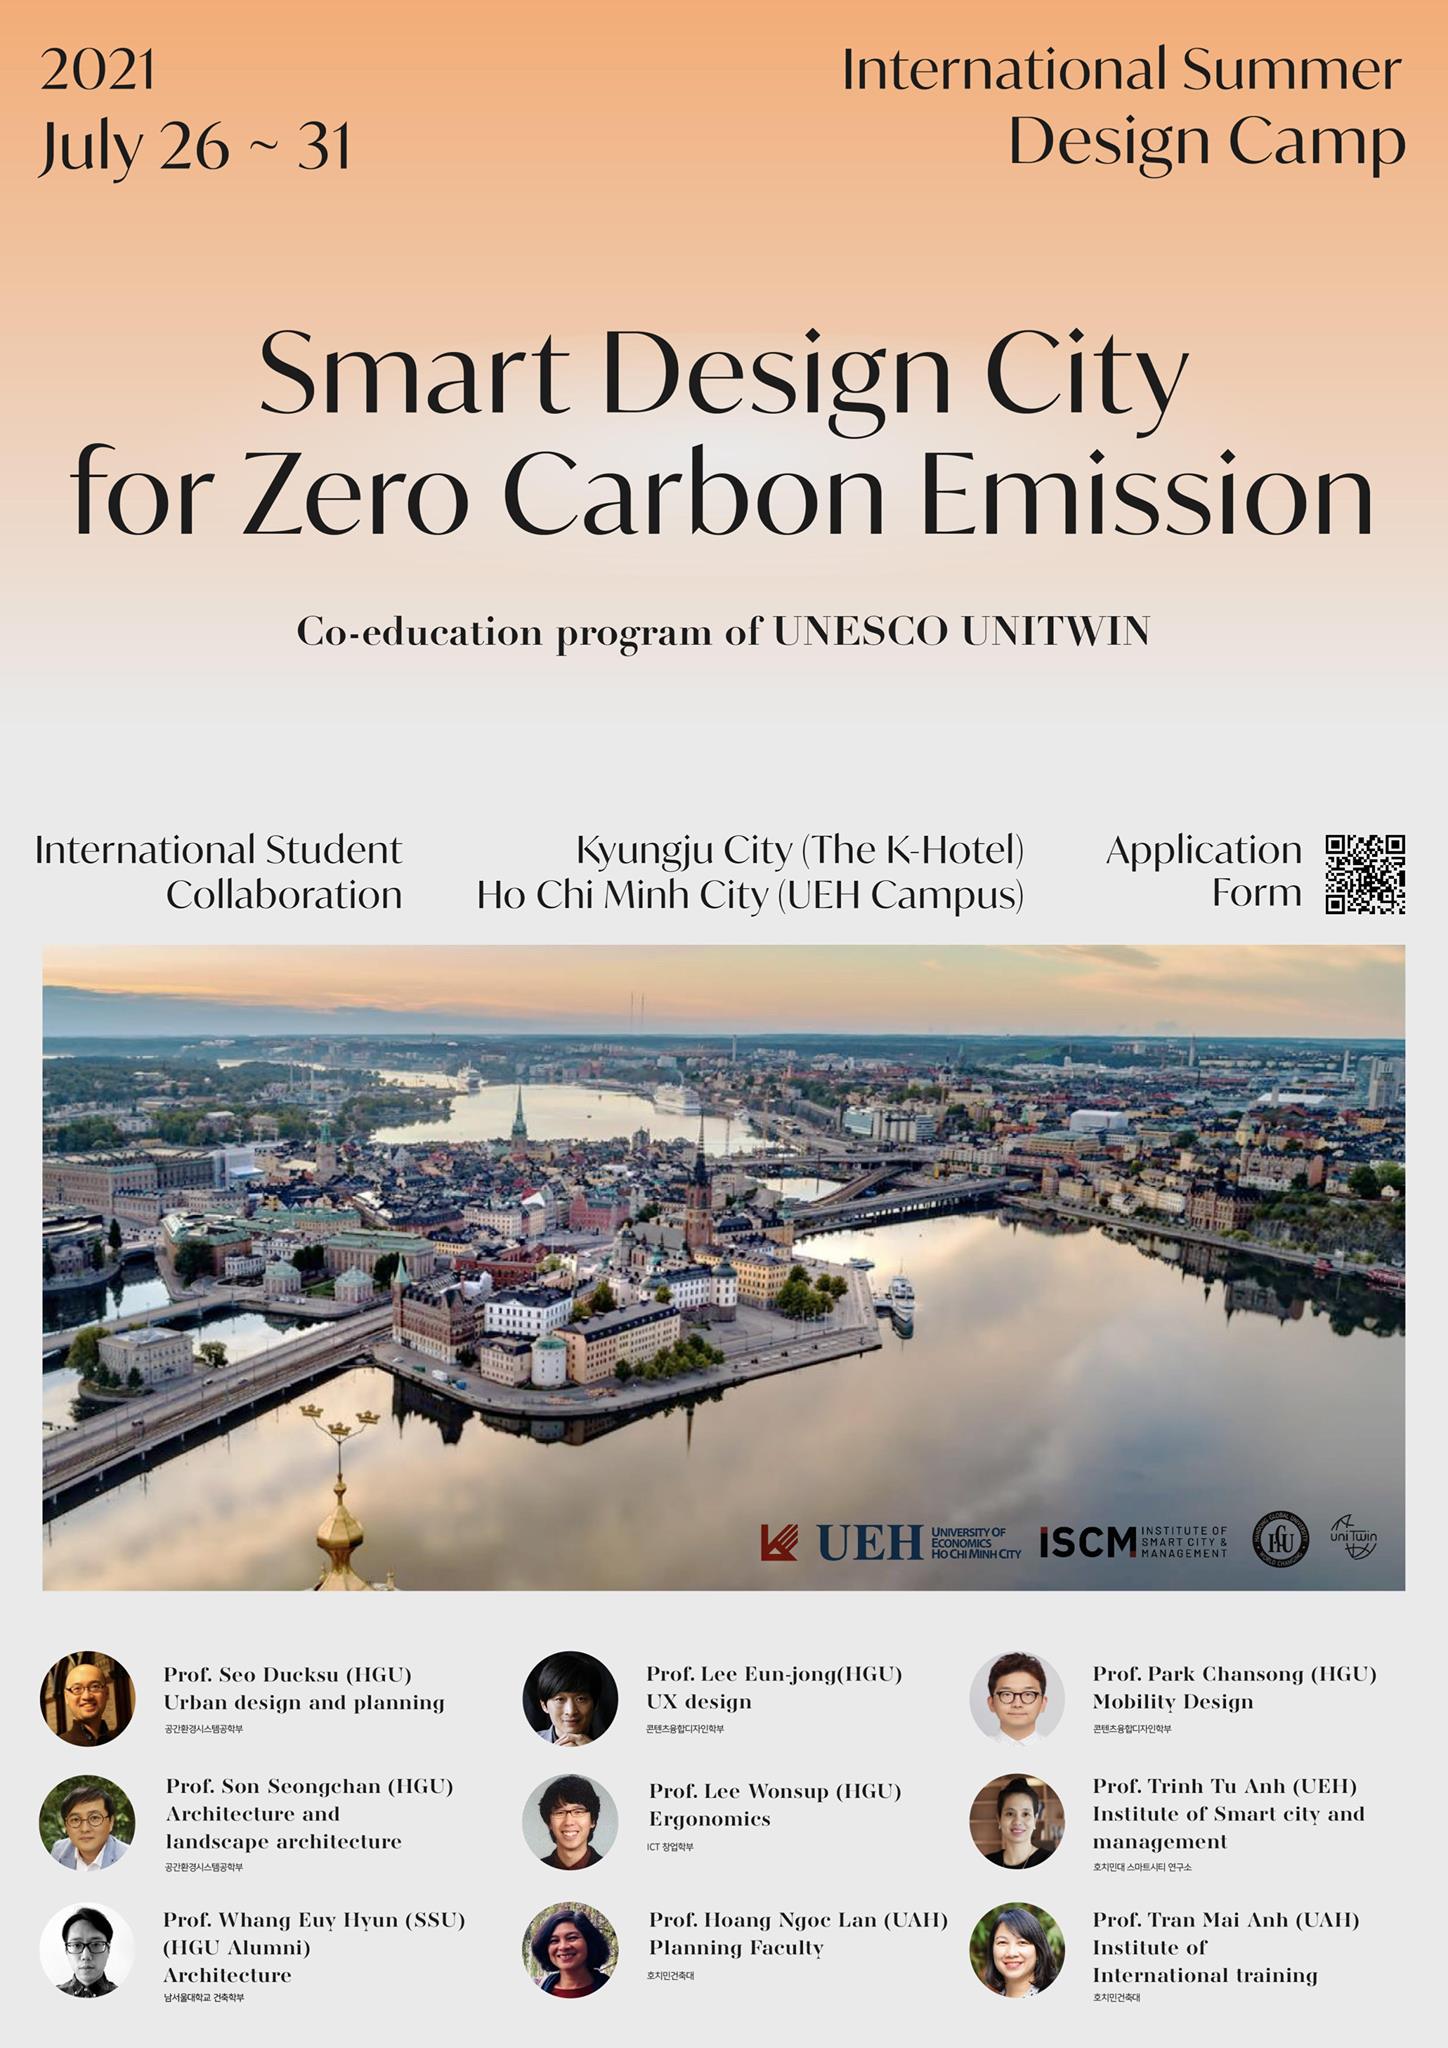 International Summer Design Camp 2021: Smart Design City for Zero Carbon Emission